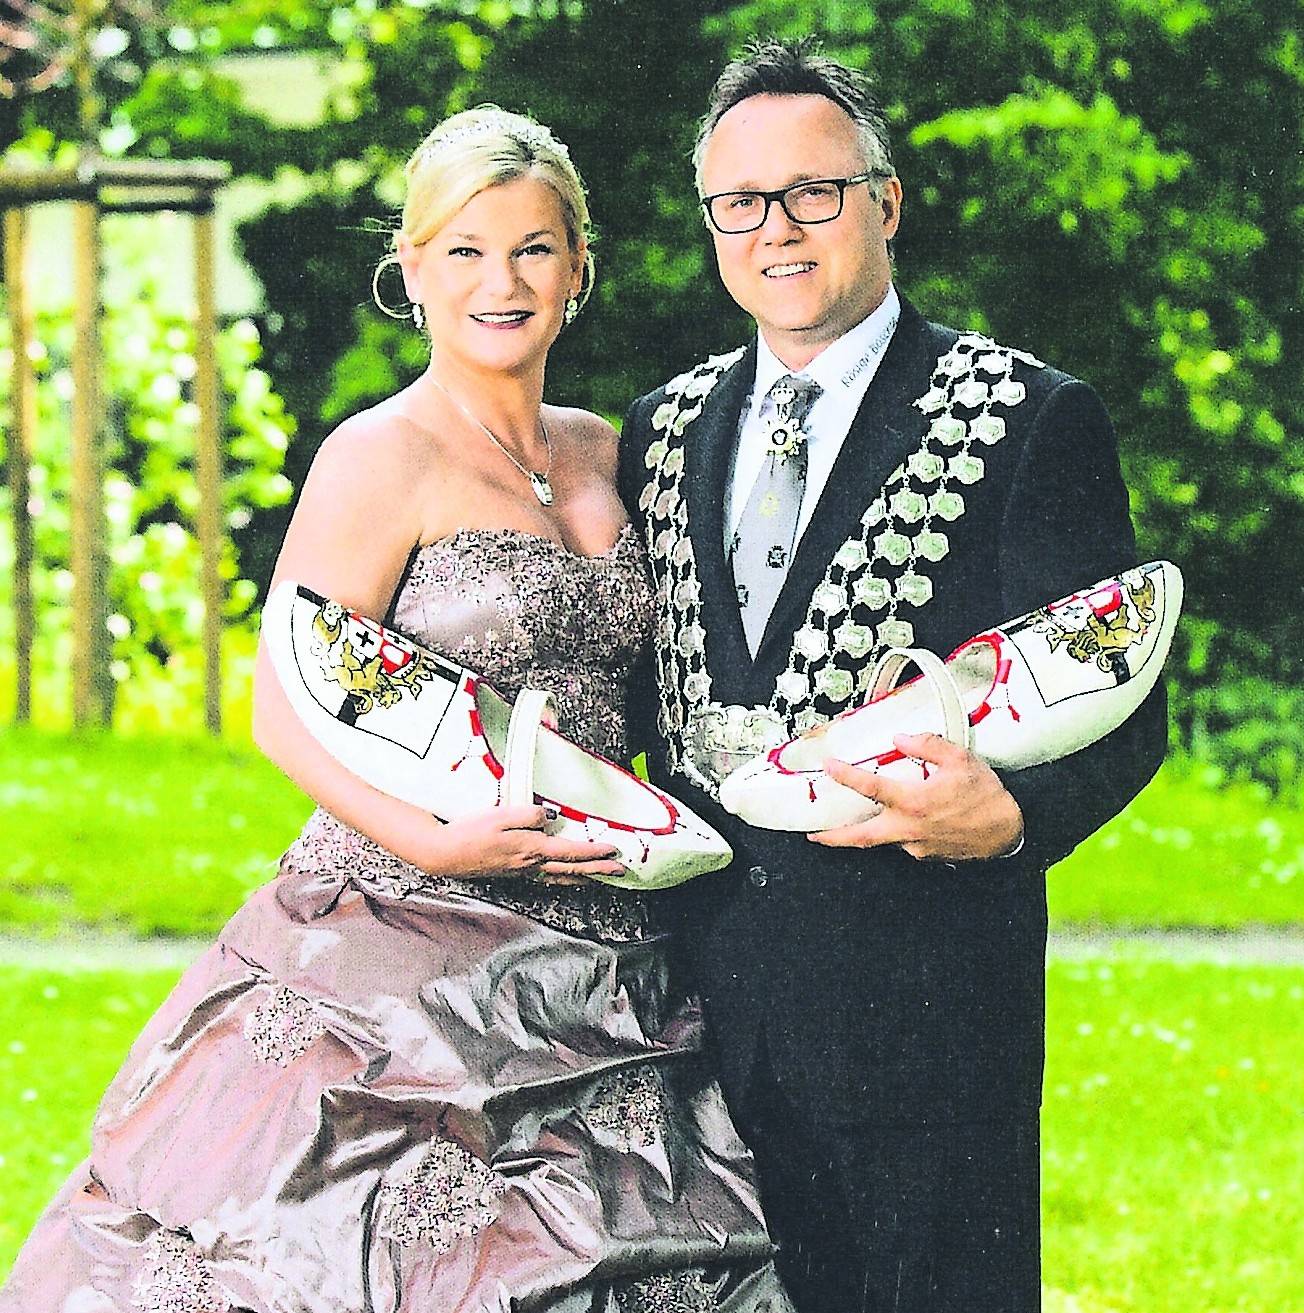  Dirk und Melanie Bennert sind ein wirklich strahlendes Königspaar für die engagierte Kirmesgesellschaft aus Elsen.  